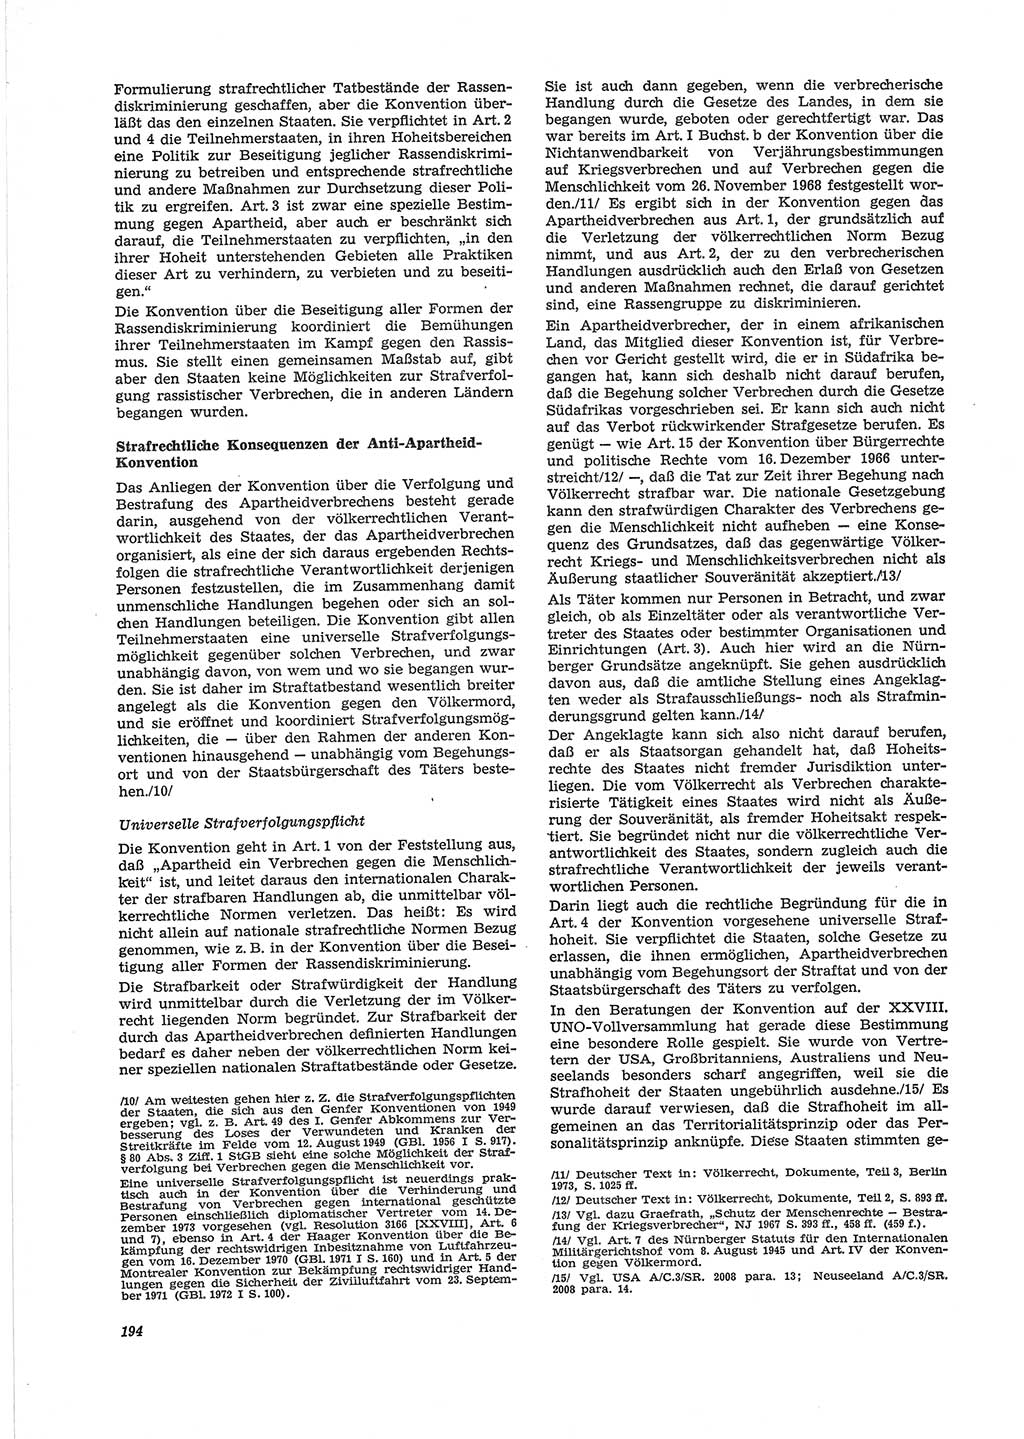 Neue Justiz (NJ), Zeitschrift für Recht und Rechtswissenschaft [Deutsche Demokratische Republik (DDR)], 28. Jahrgang 1974, Seite 194 (NJ DDR 1974, S. 194)